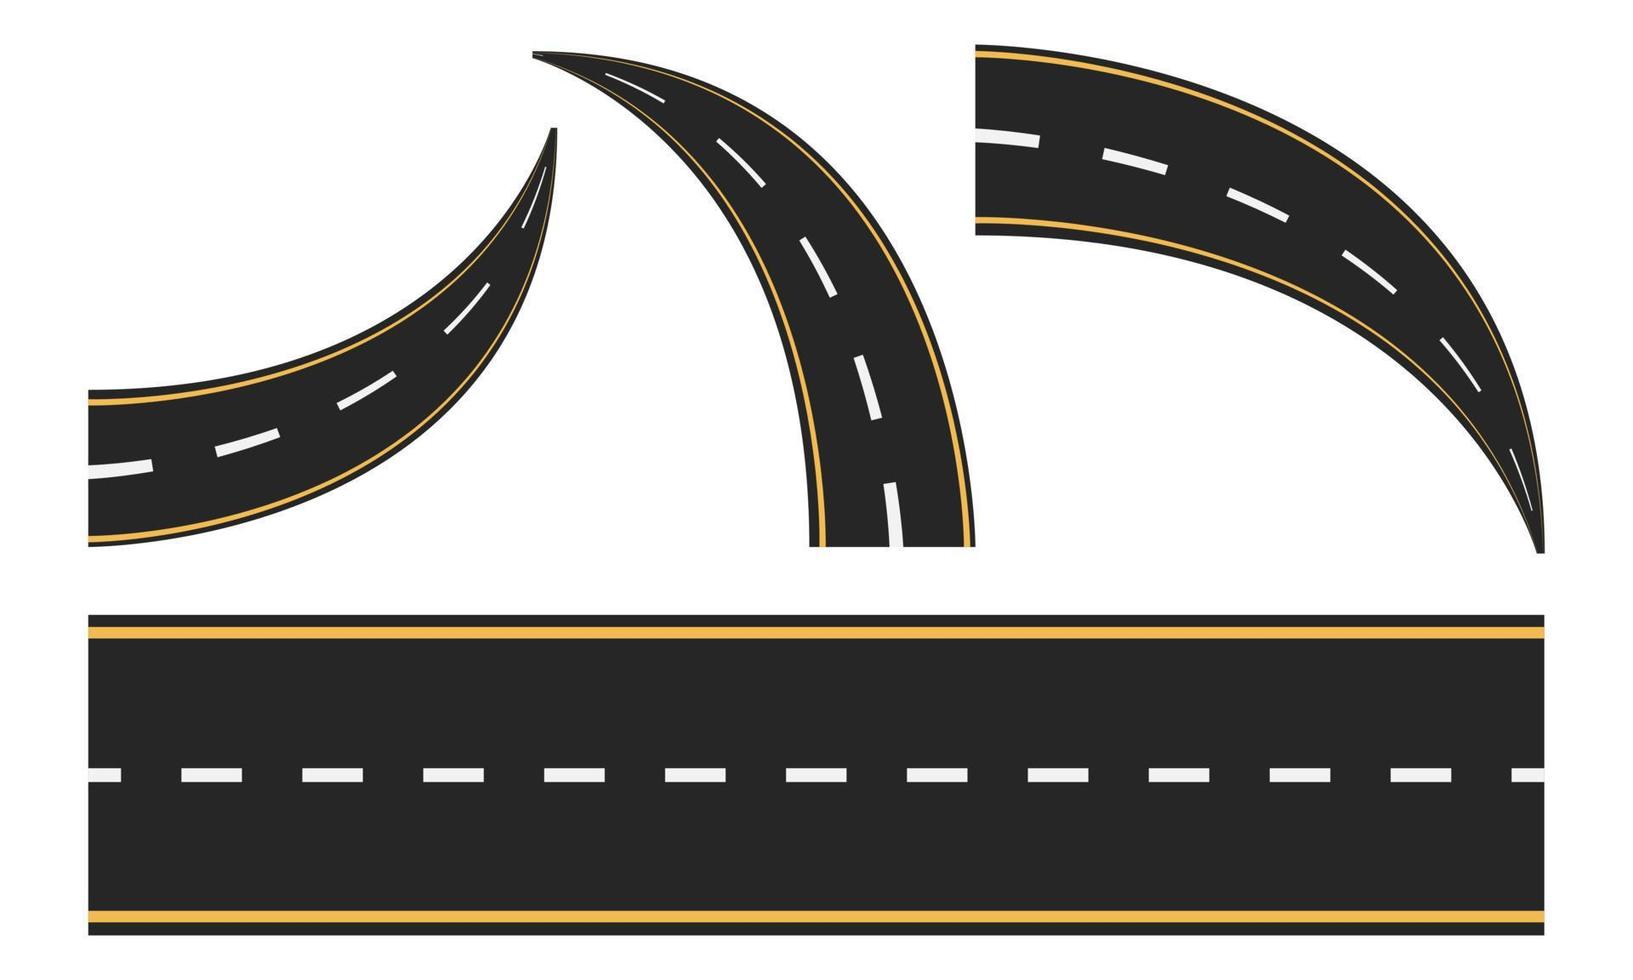 carretera de carreras, carretera asfaltada recta, curva y con curvas. ilustración vectorial eps 10. vector